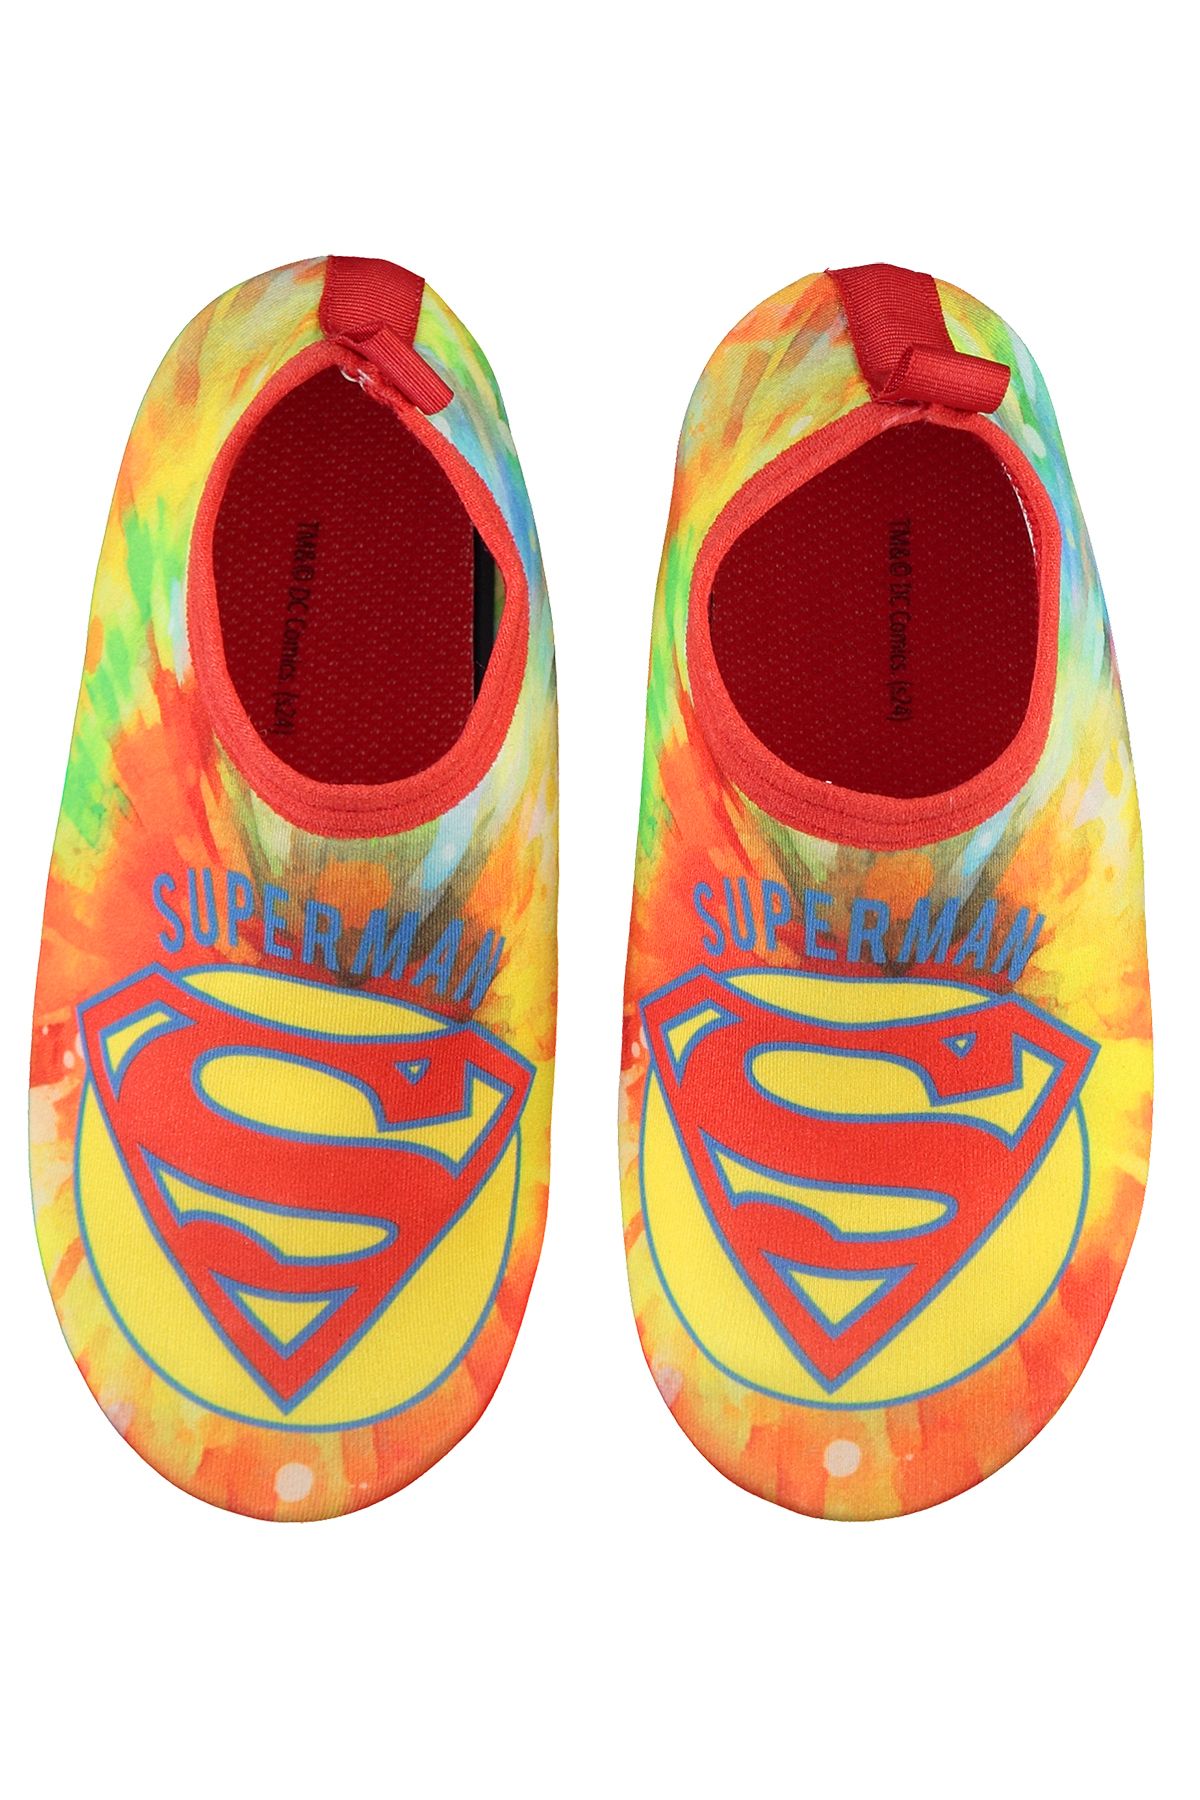 Superman Erkek Çocuk Deniz Ayakkabısı 26-30 Numara Batik